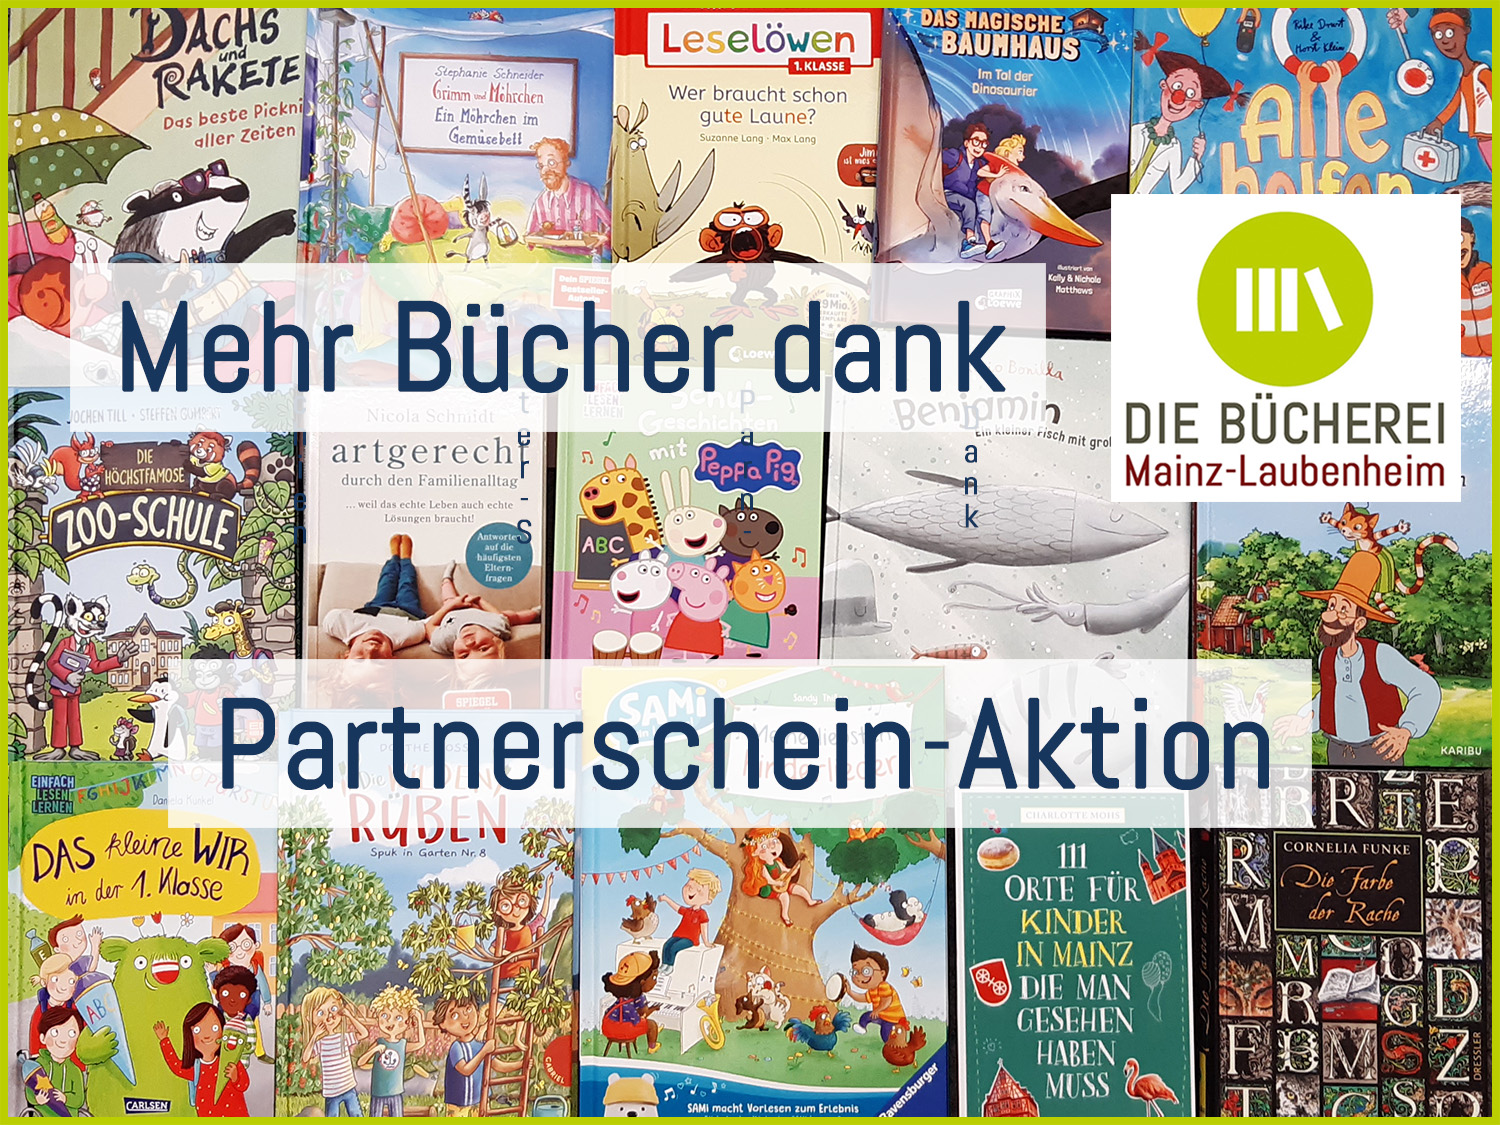 Herzlichen Dank dem Team von Buchladen Ruthmann für diese tolle Kooperation! (c) Die Bücherei Mainz-Laubenheim